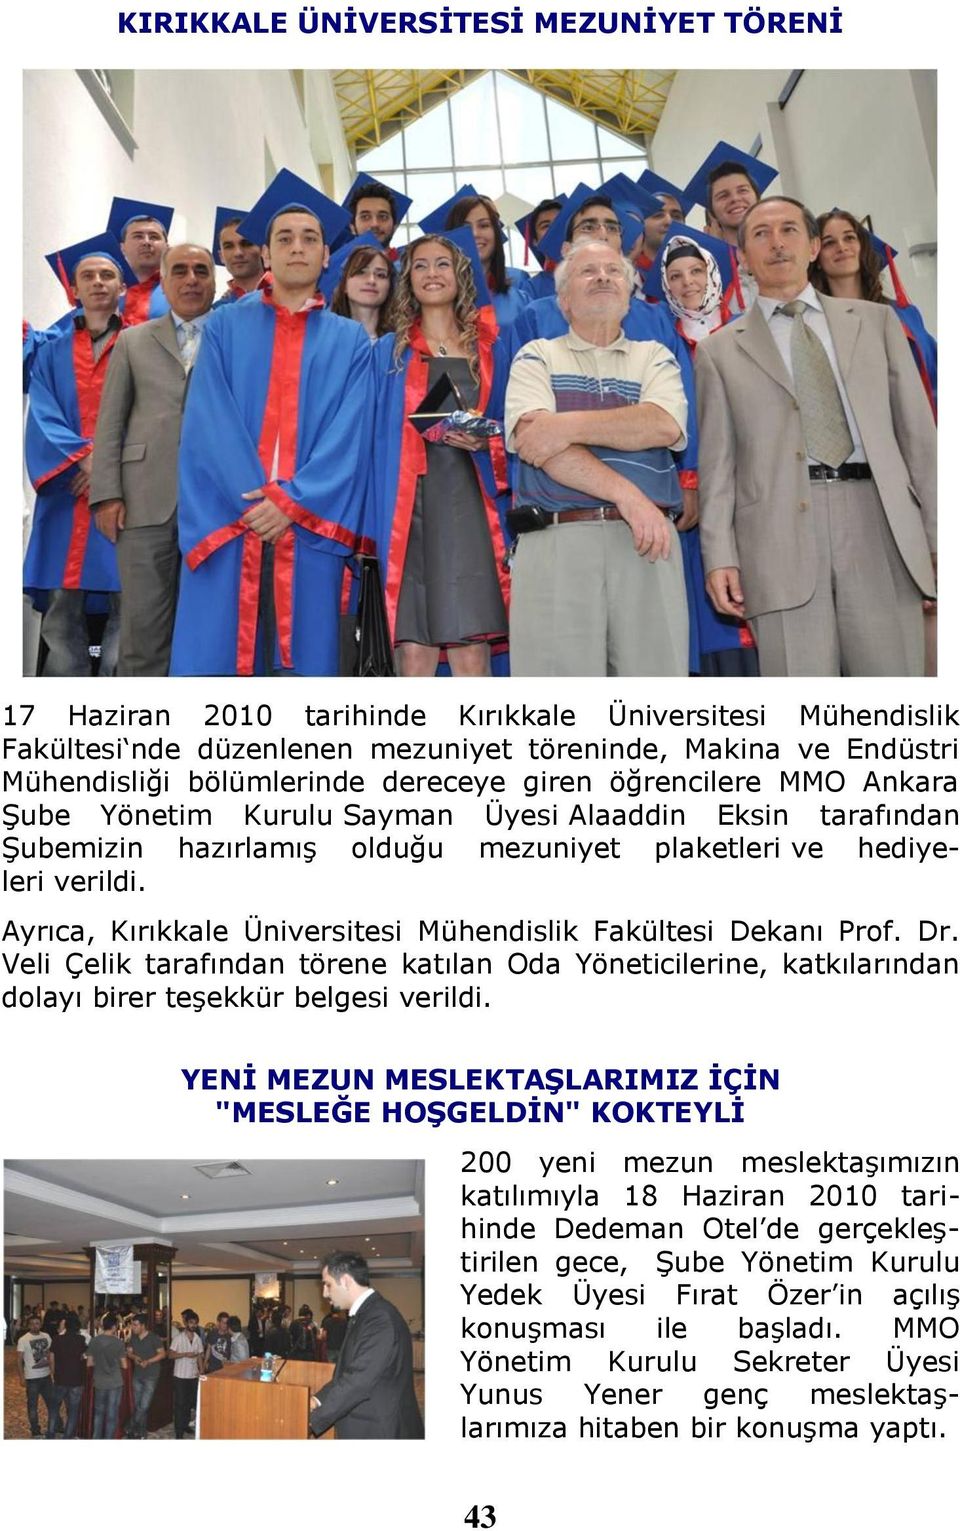 Ayrıca, Kırıkkale Üniversitesi Mühendislik Fakültesi Dekanı Prof. Dr. Veli Çelik tarafından törene katılan Oda Yöneticilerine, katkılarından dolayı birer teşekkür belgesi verildi.